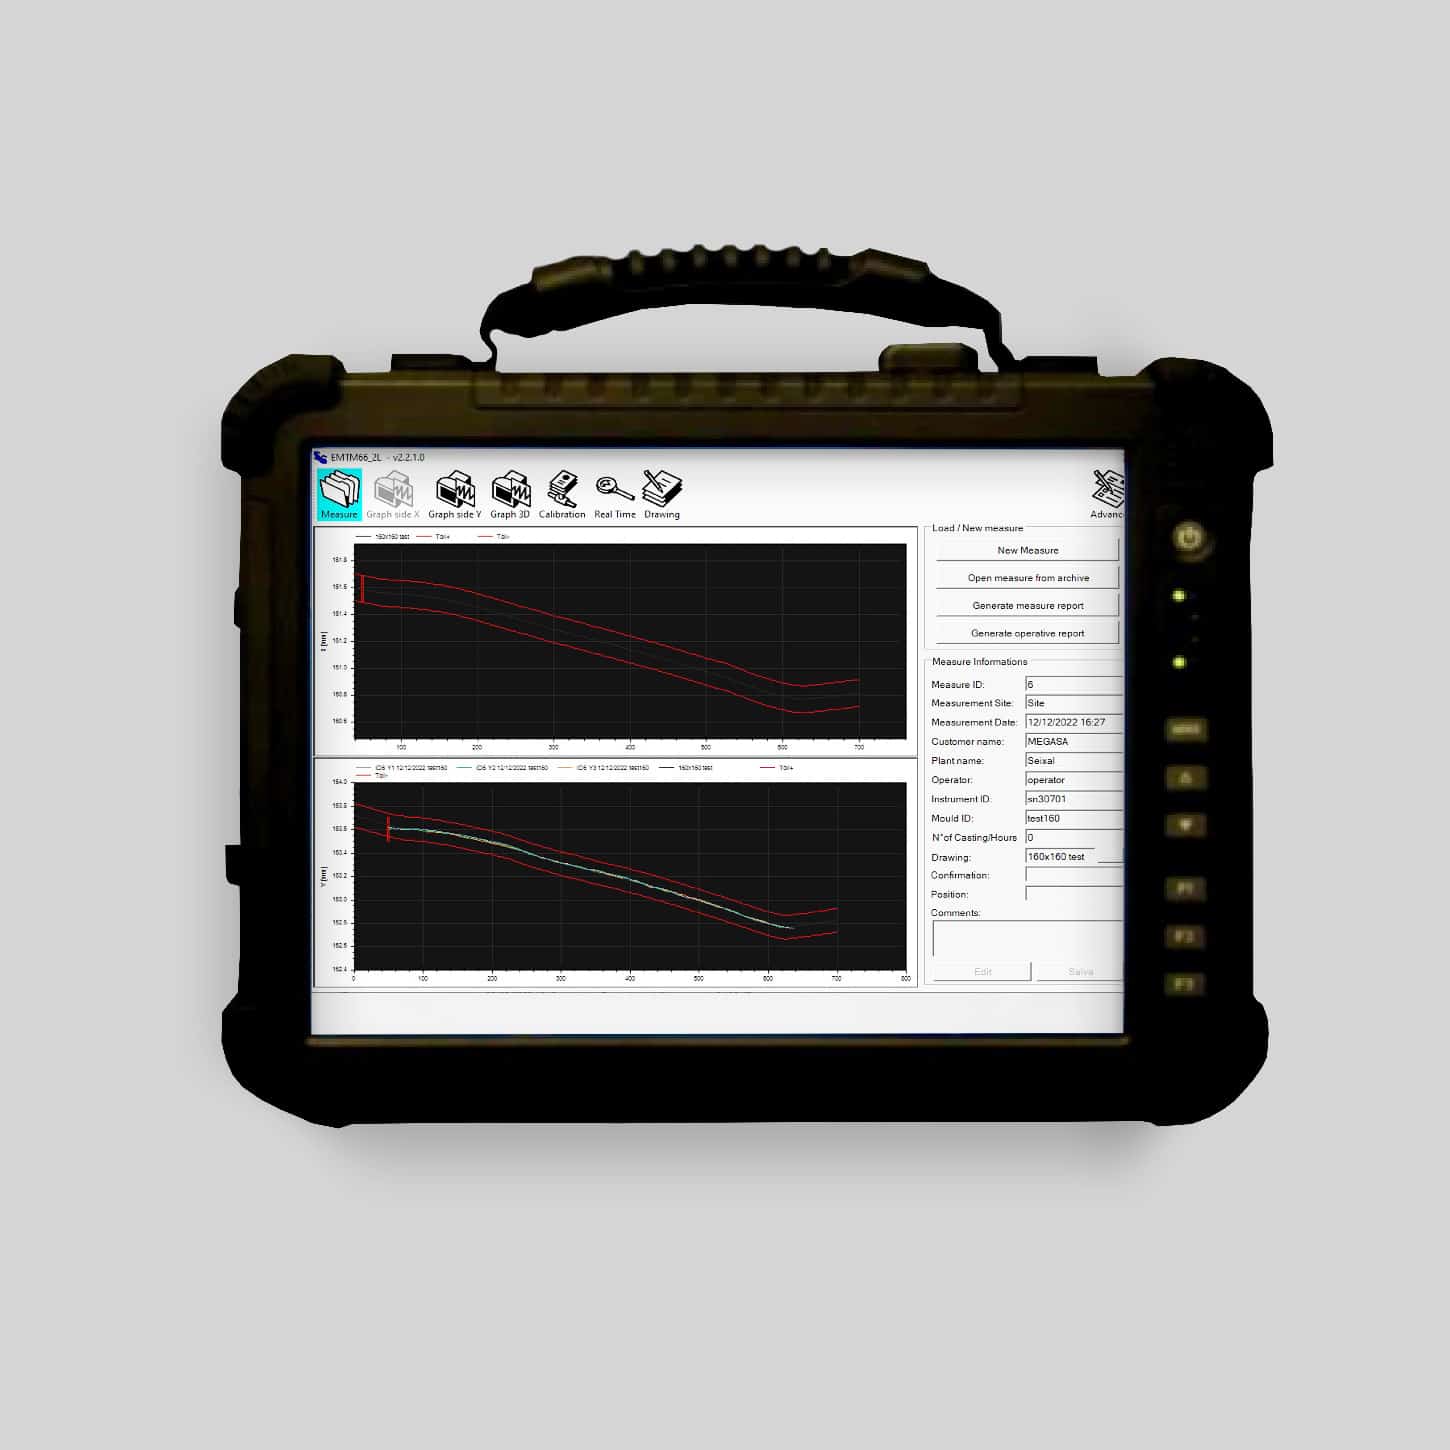 Software in Rugged Tablet of EMTM67